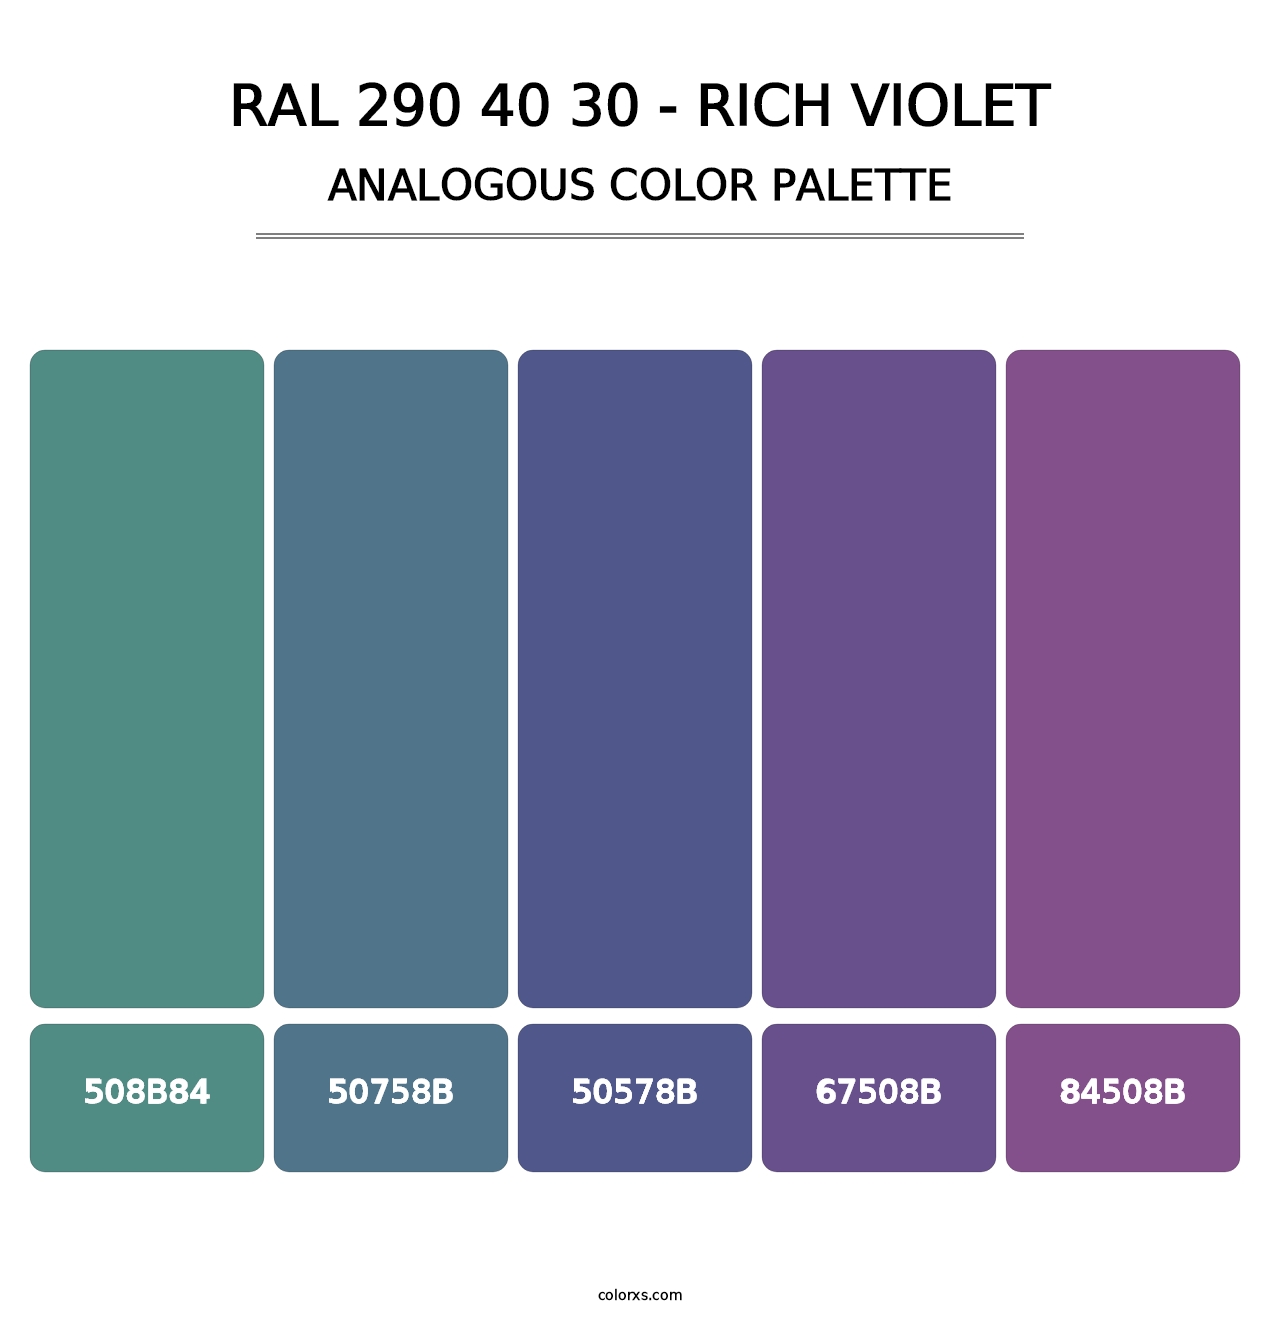 RAL 290 40 30 - Rich Violet - Analogous Color Palette